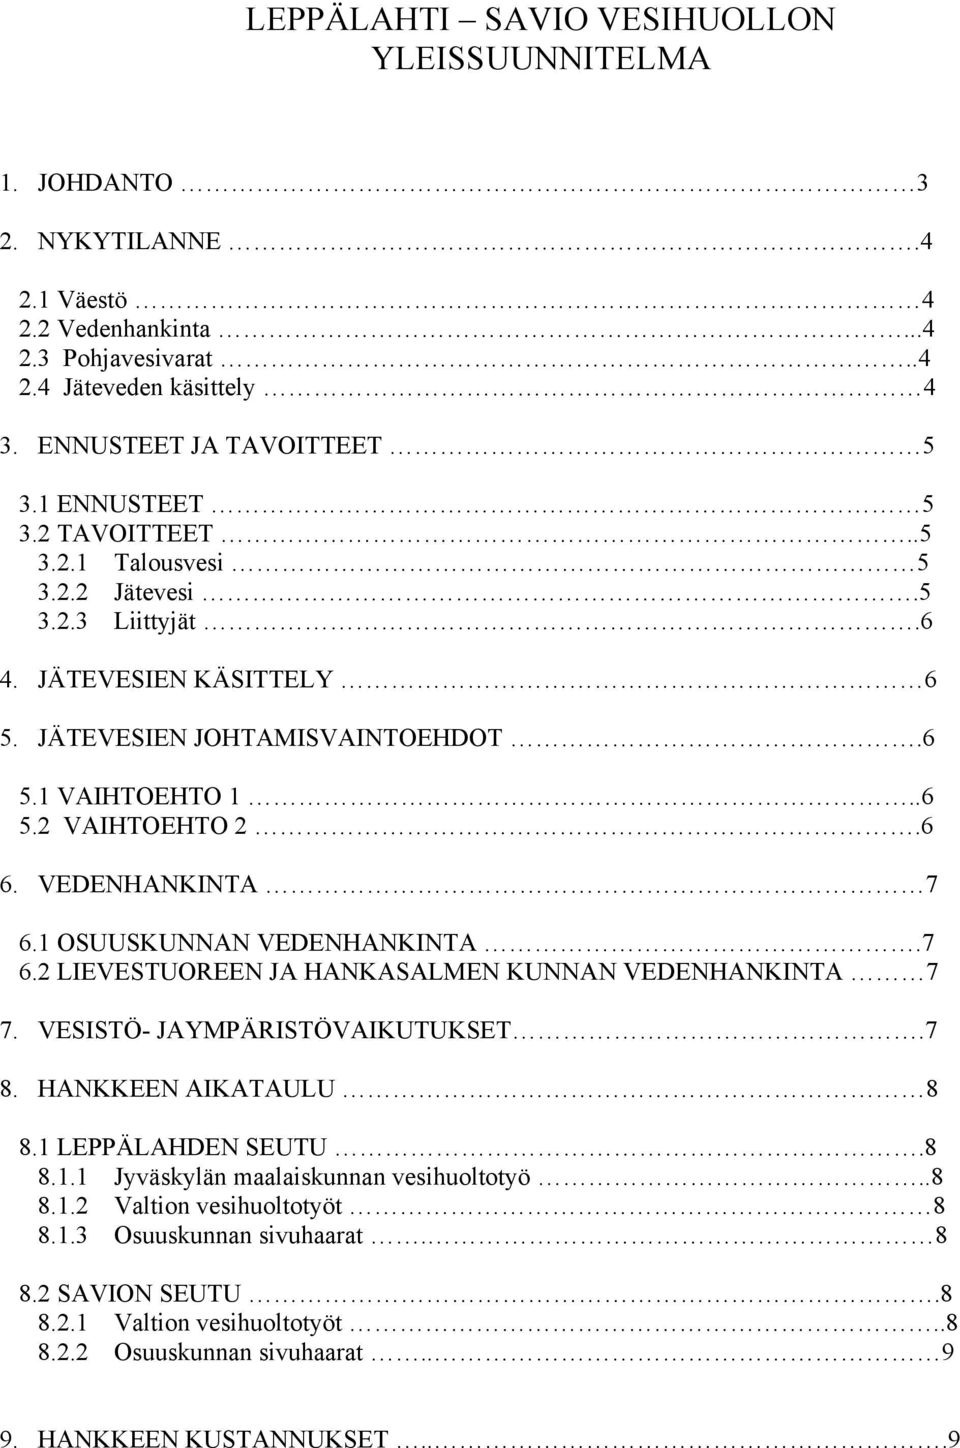 VEDENHANKINTA 7 6.1 OSUUSKUNNAN VEDENHANKINTA.7 6.2 LIEVESTUOREEN JA HANKASALMEN KUNNAN VEDENHANKINTA 7 7. VESISTÖ- JAYMPÄRISTÖVAIKUTUKSET.7 8. HANKKEEN AIKATAULU 8 8.1 LEPPÄLAHDEN SEUTU.8 8.1.1 Jyväskylän maalaiskunnan vesihuoltotyö.